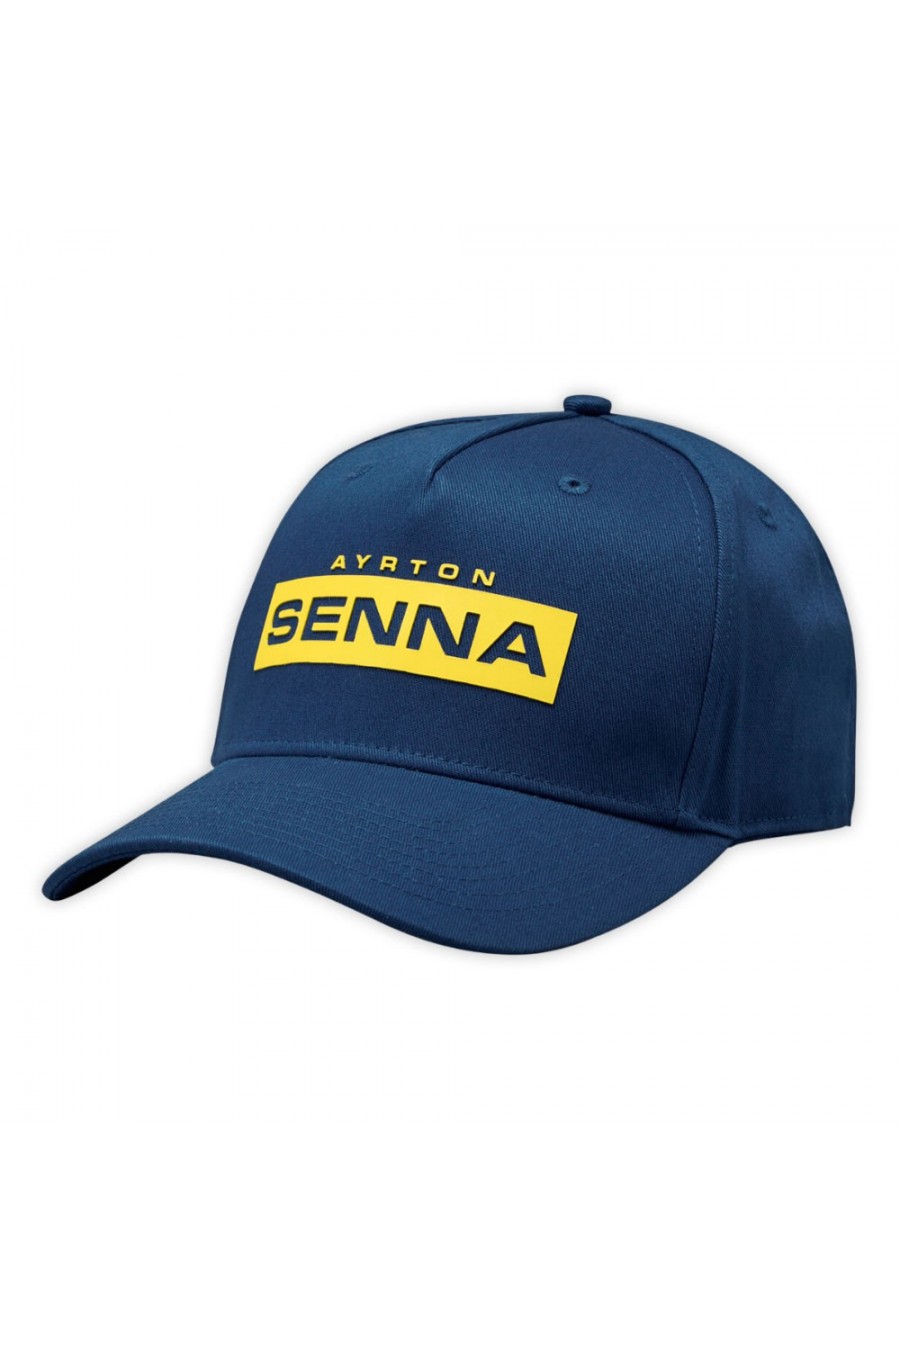 Gorra Ayrton Senna Logo